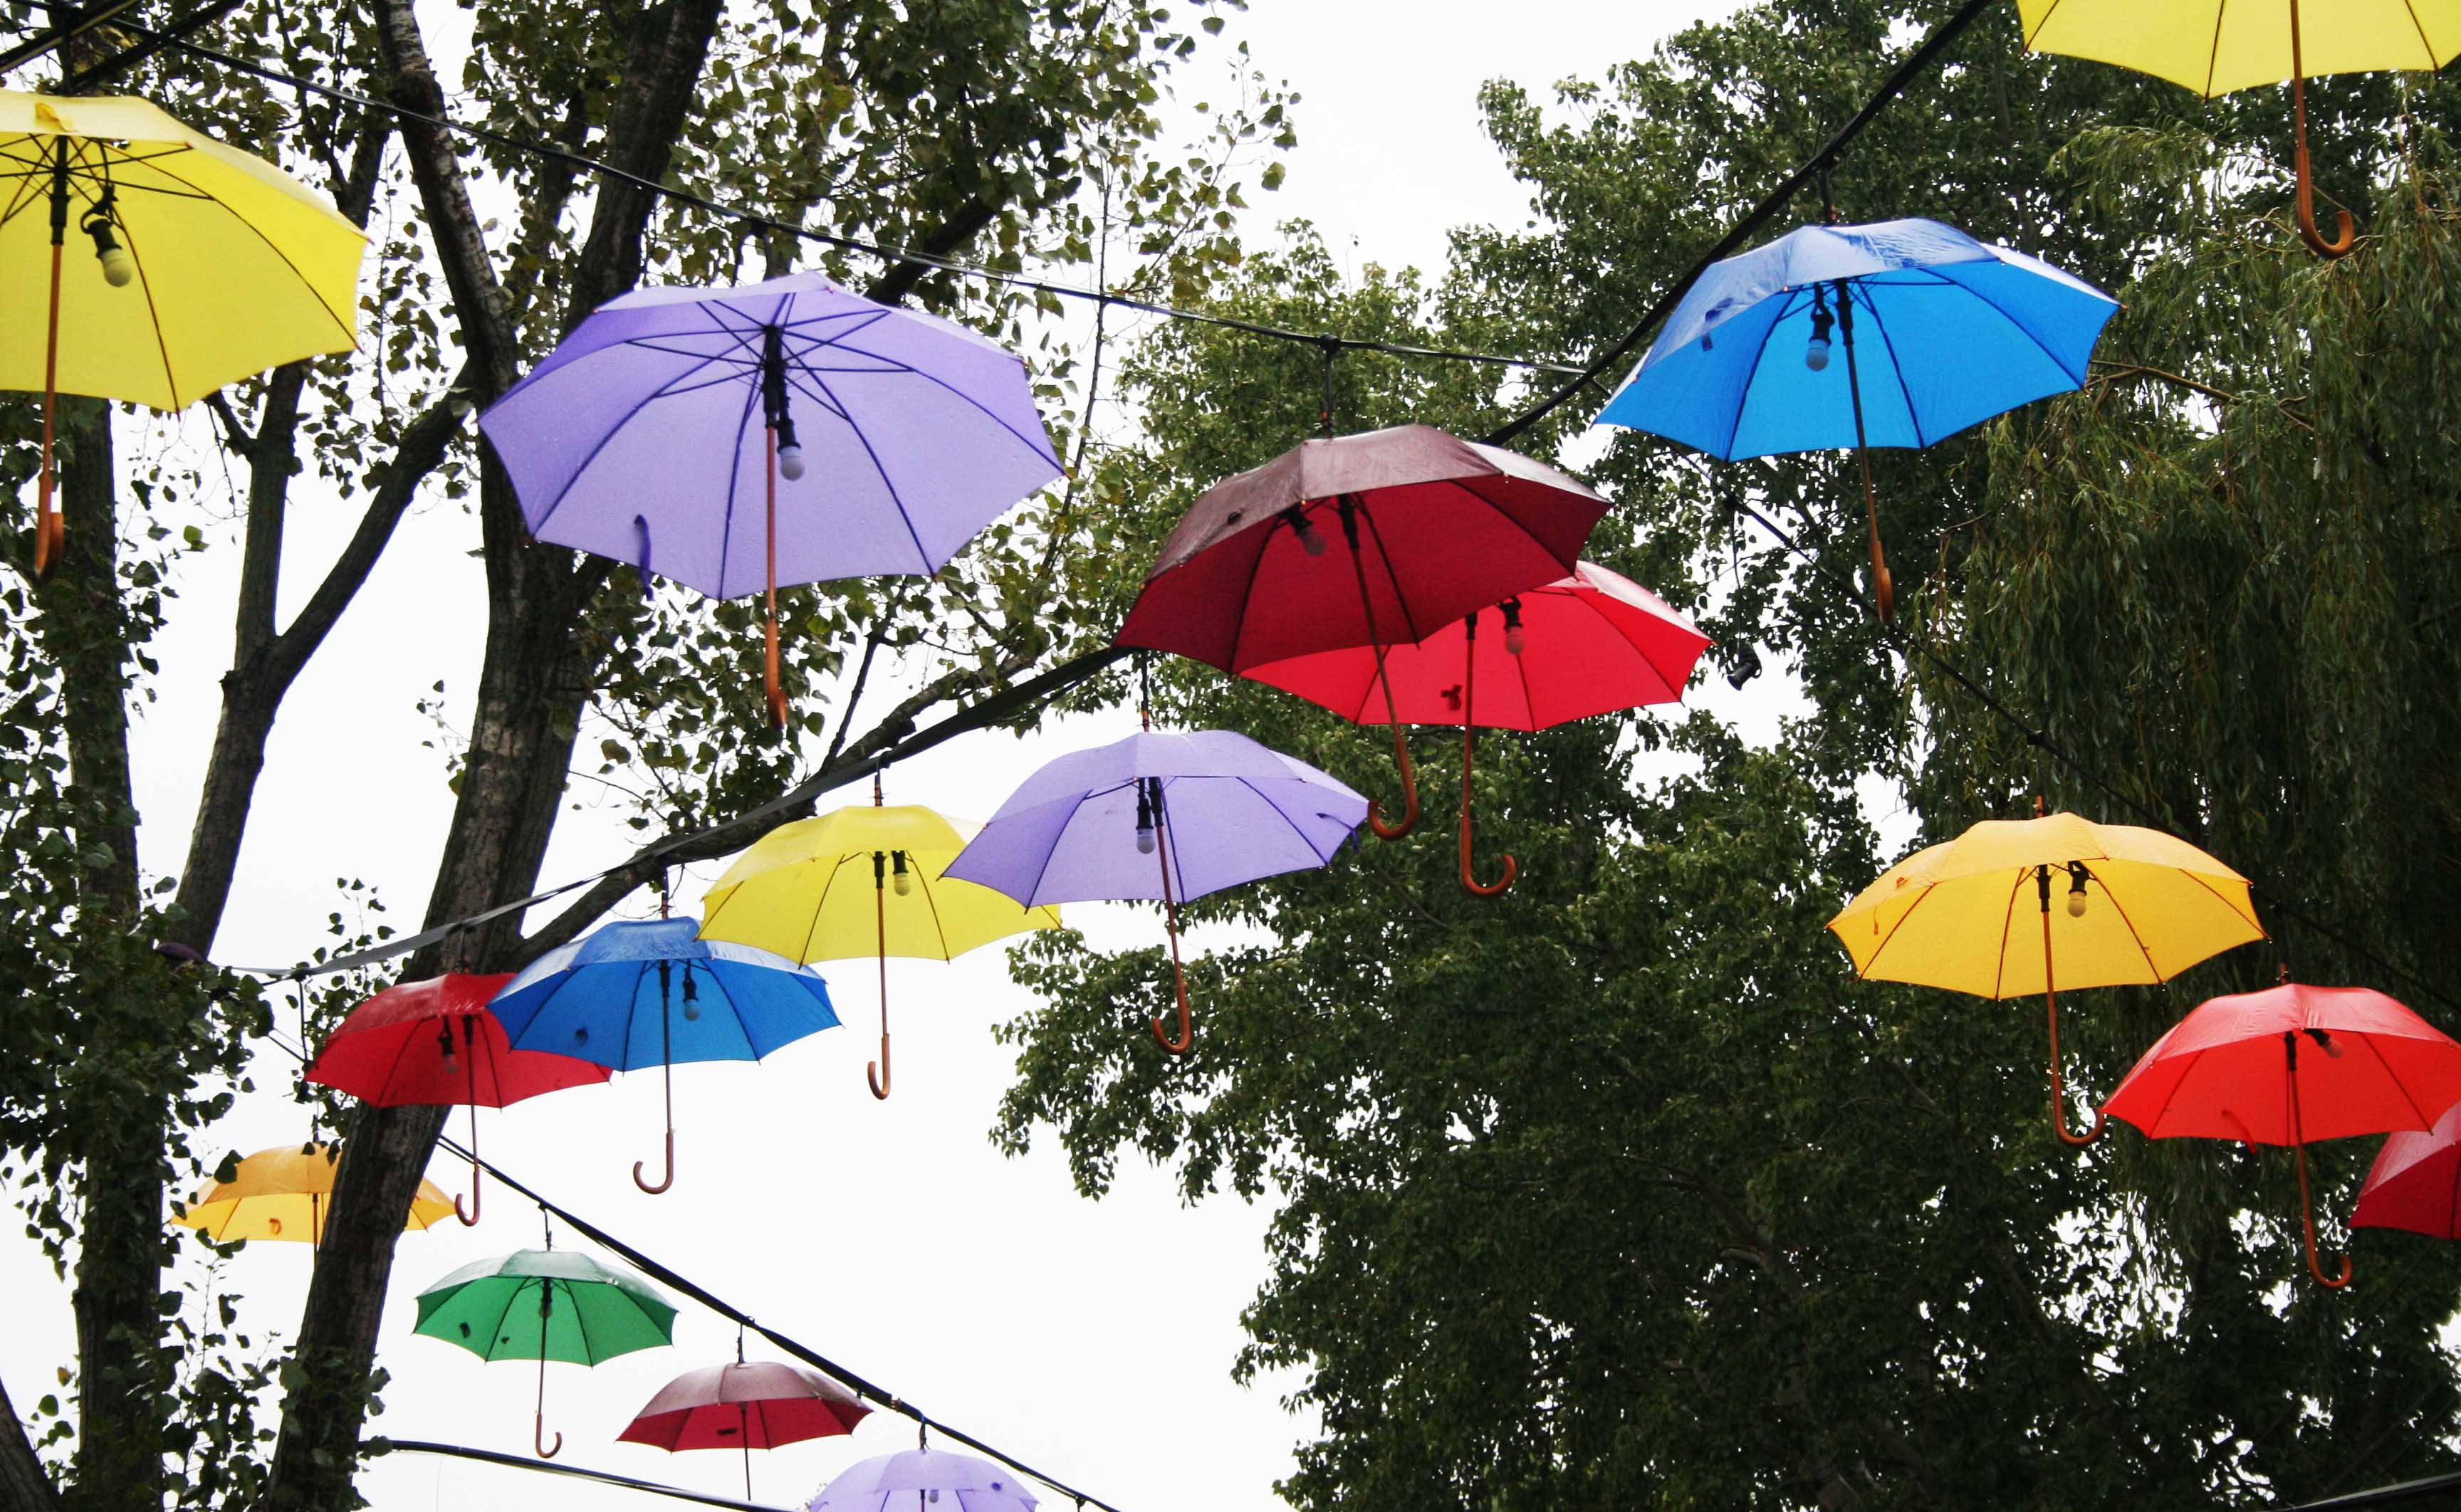 Ezek az esernyők a helyükön maradtak, pedig biztos sokan örültek volna egynek a zápor idején.